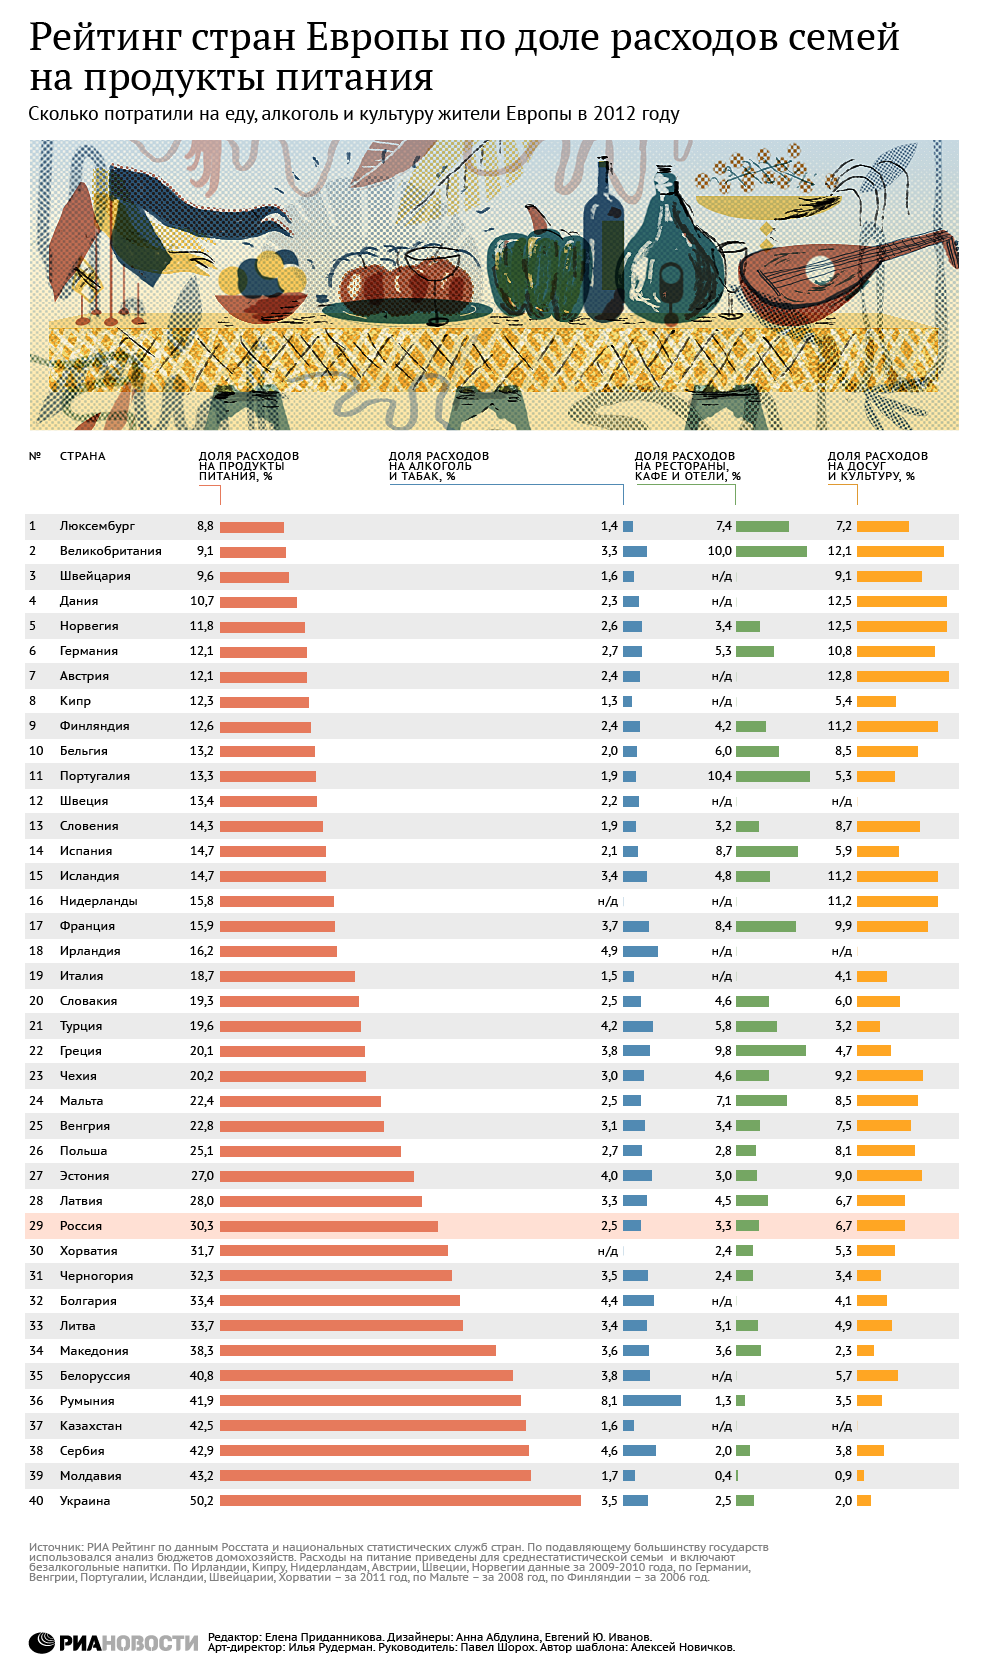 Рейтинг стран Европы по доле расходов на еду